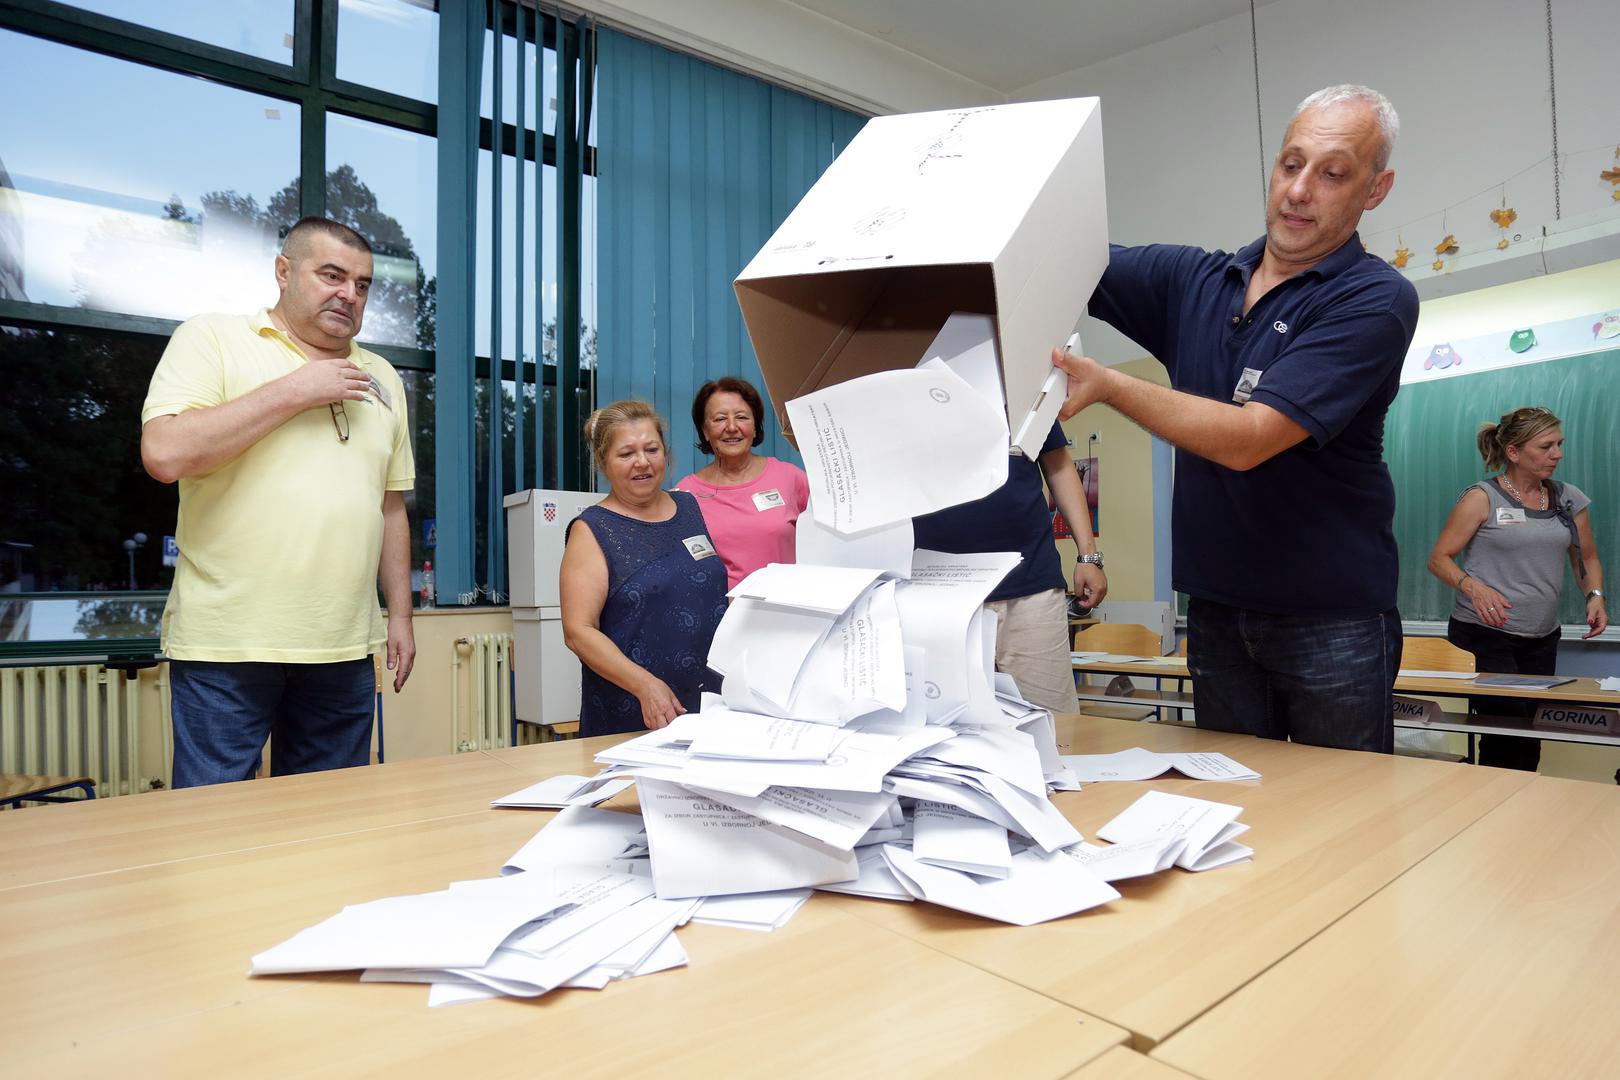 Najviše je aktivno registriranih birača u Mostaru (više od 43 tisuće), dok je u Srbiji aktivno registrirano ukupno oko 27.000 birača